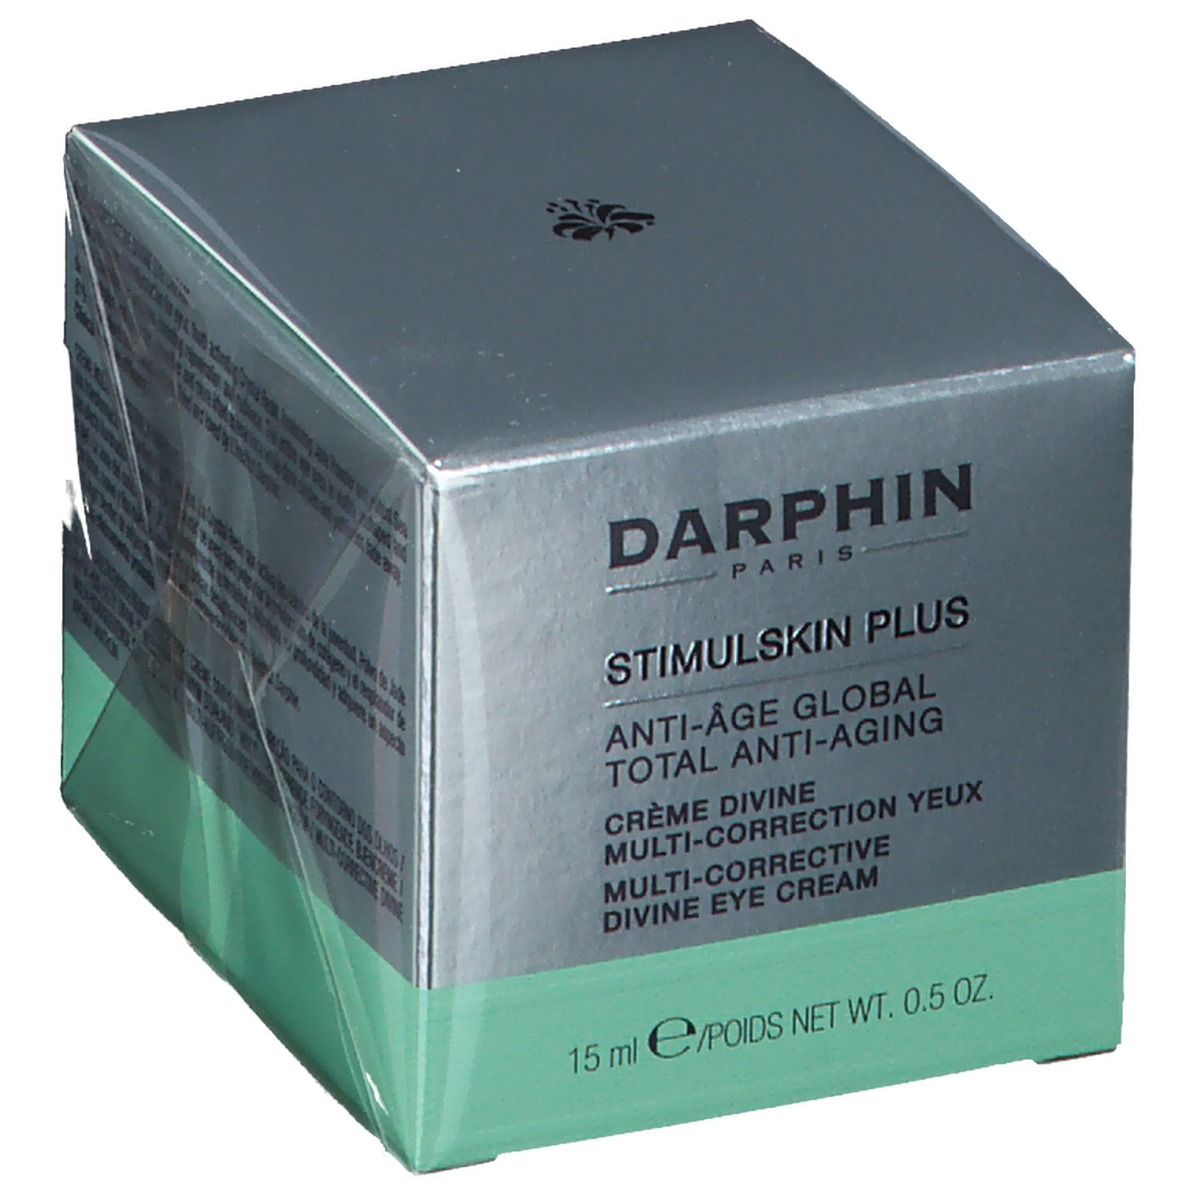 Darphin Stimulskin Plus Crème divine multi-corrections yeux